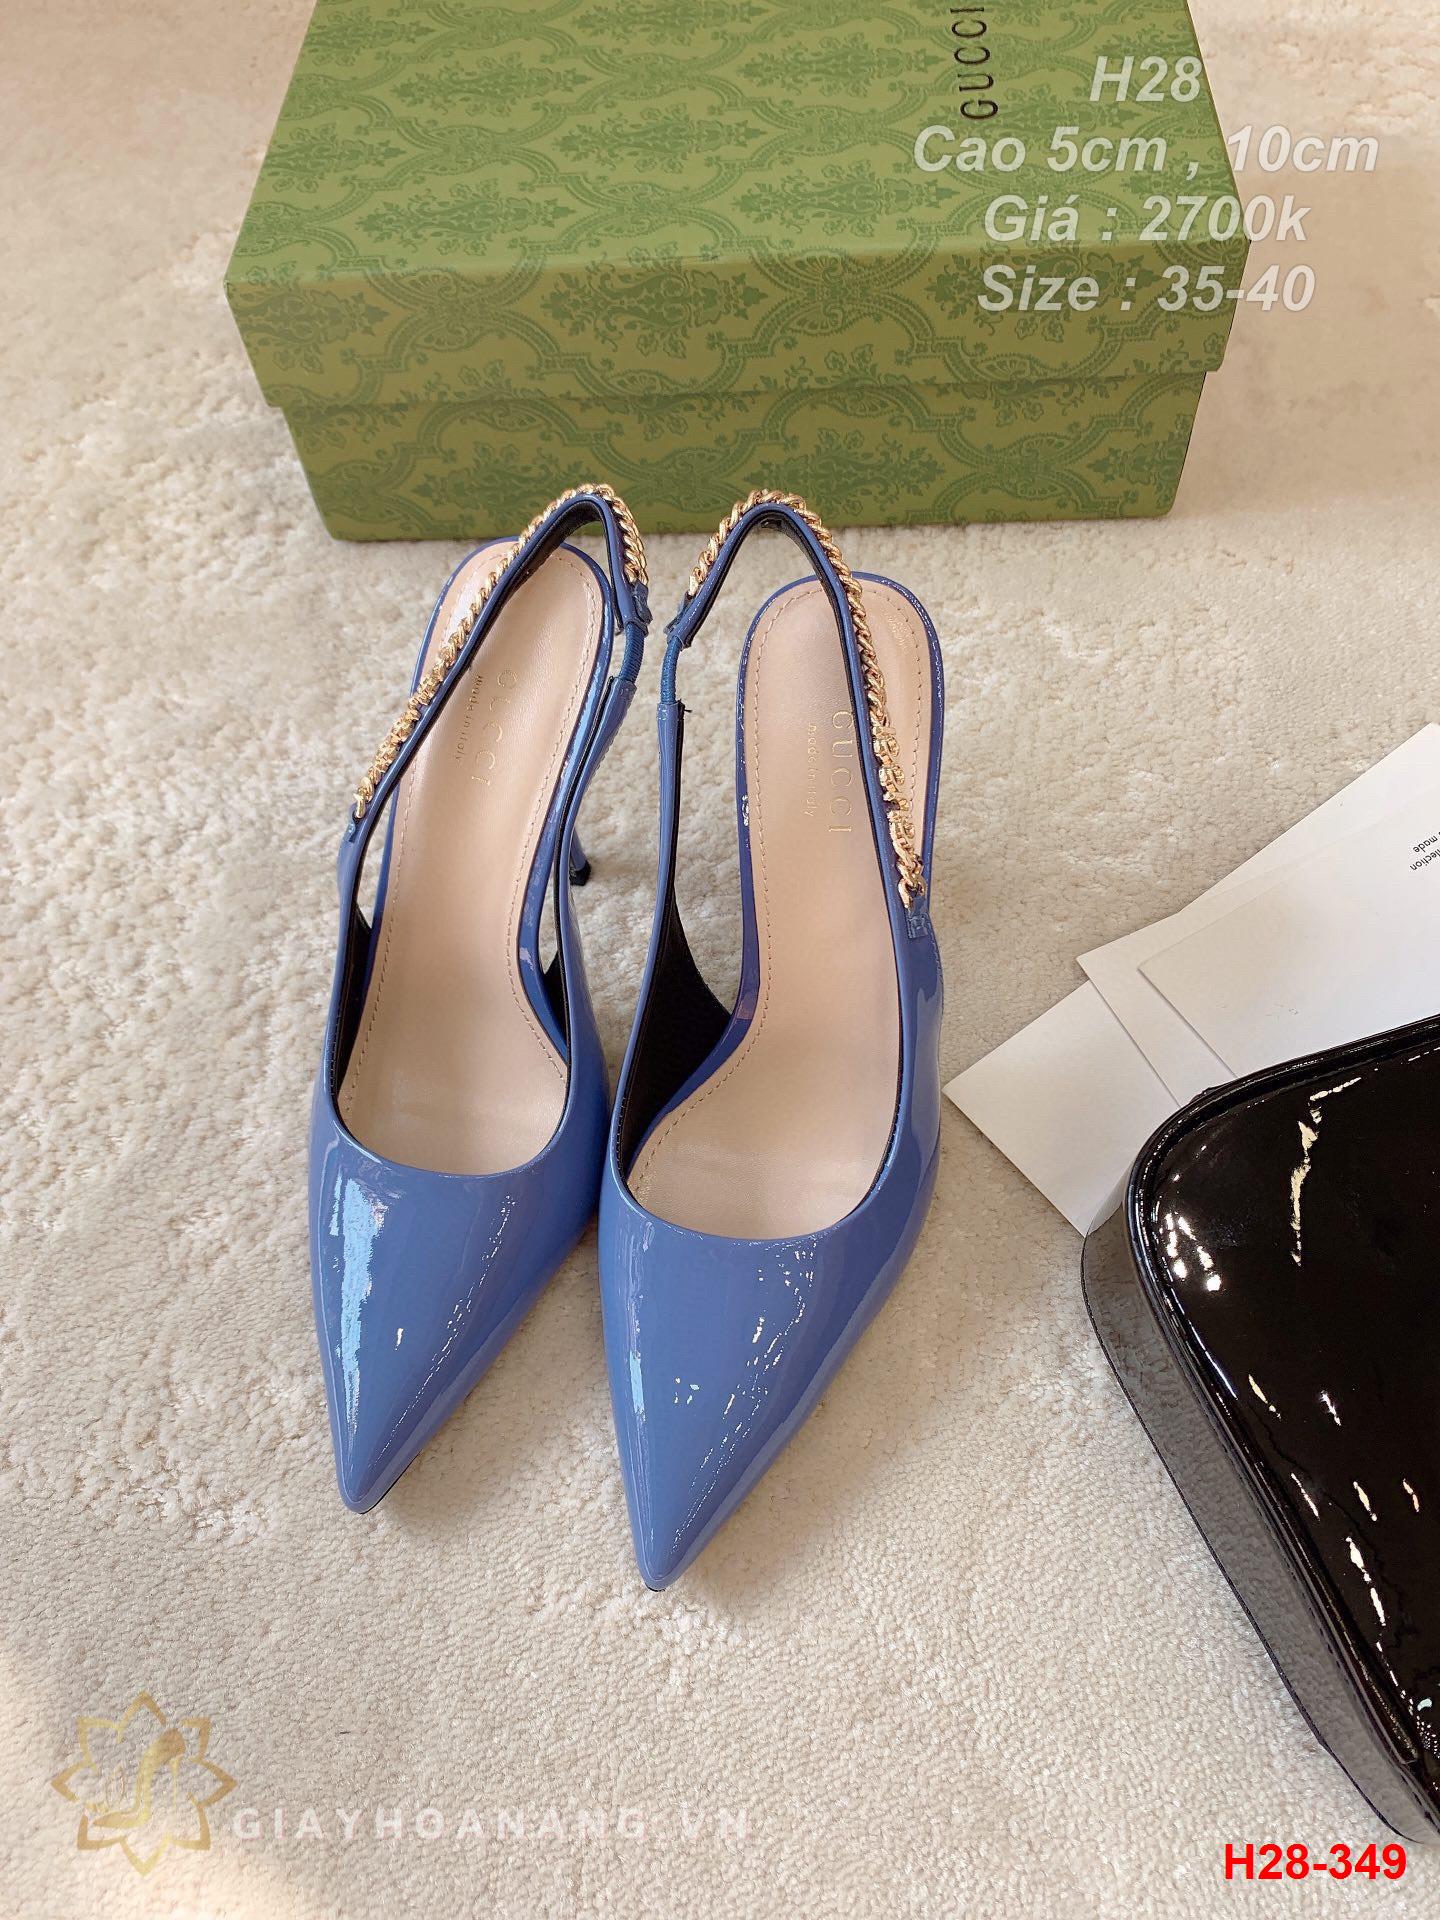 H28-349 Gucci sandal cao gót 5cm , 10cm siêu cấp